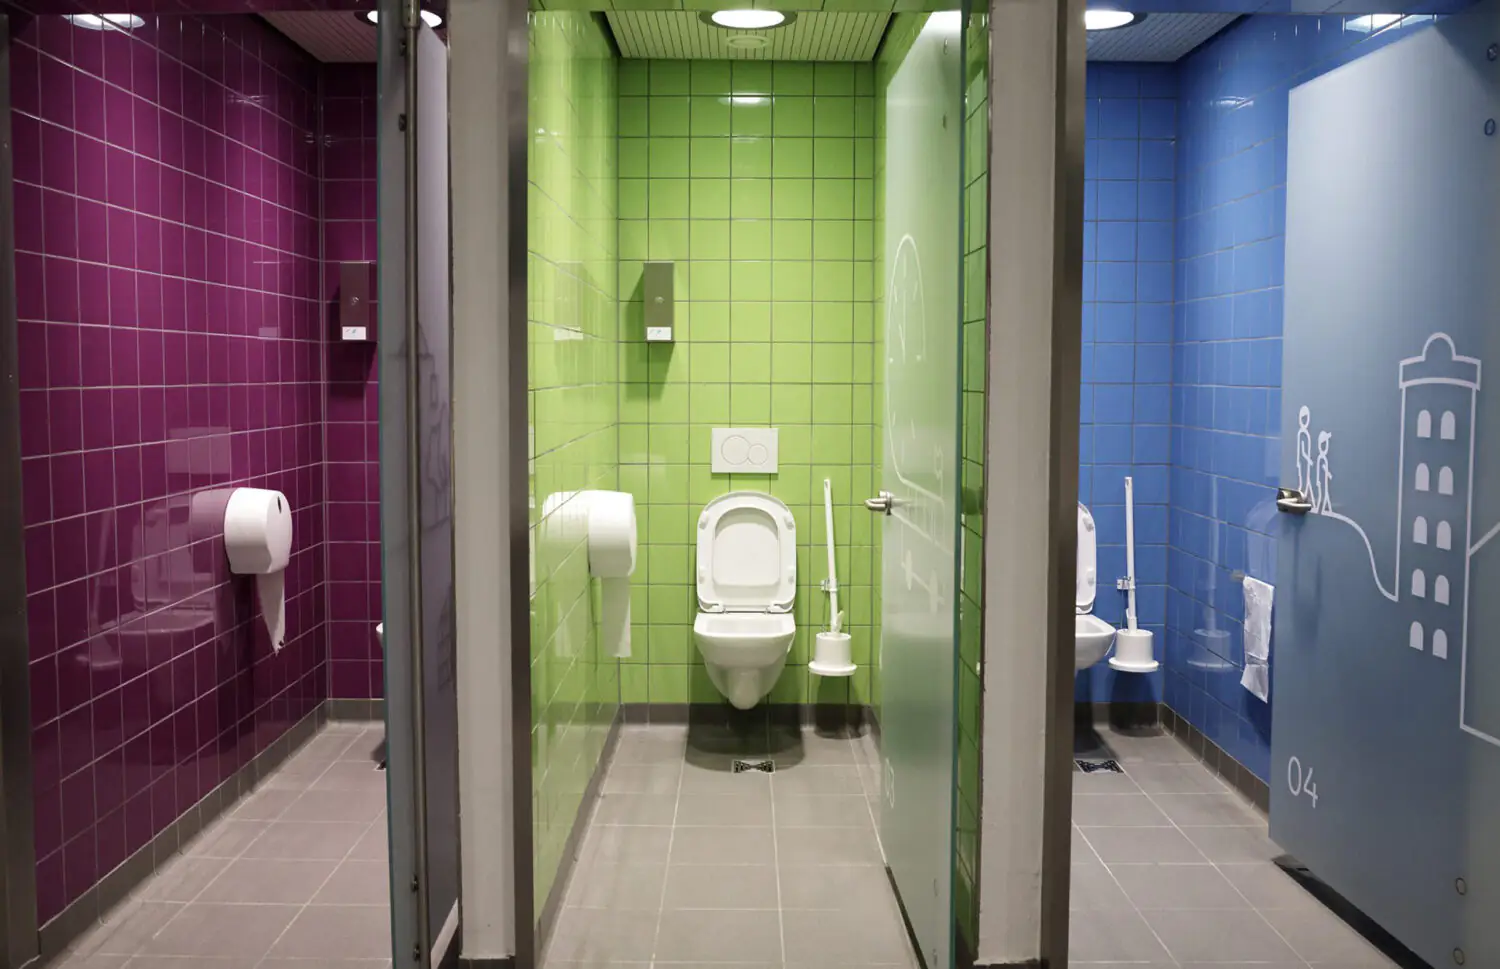 Общественные туалеты в Европе: девять примеров дизайна